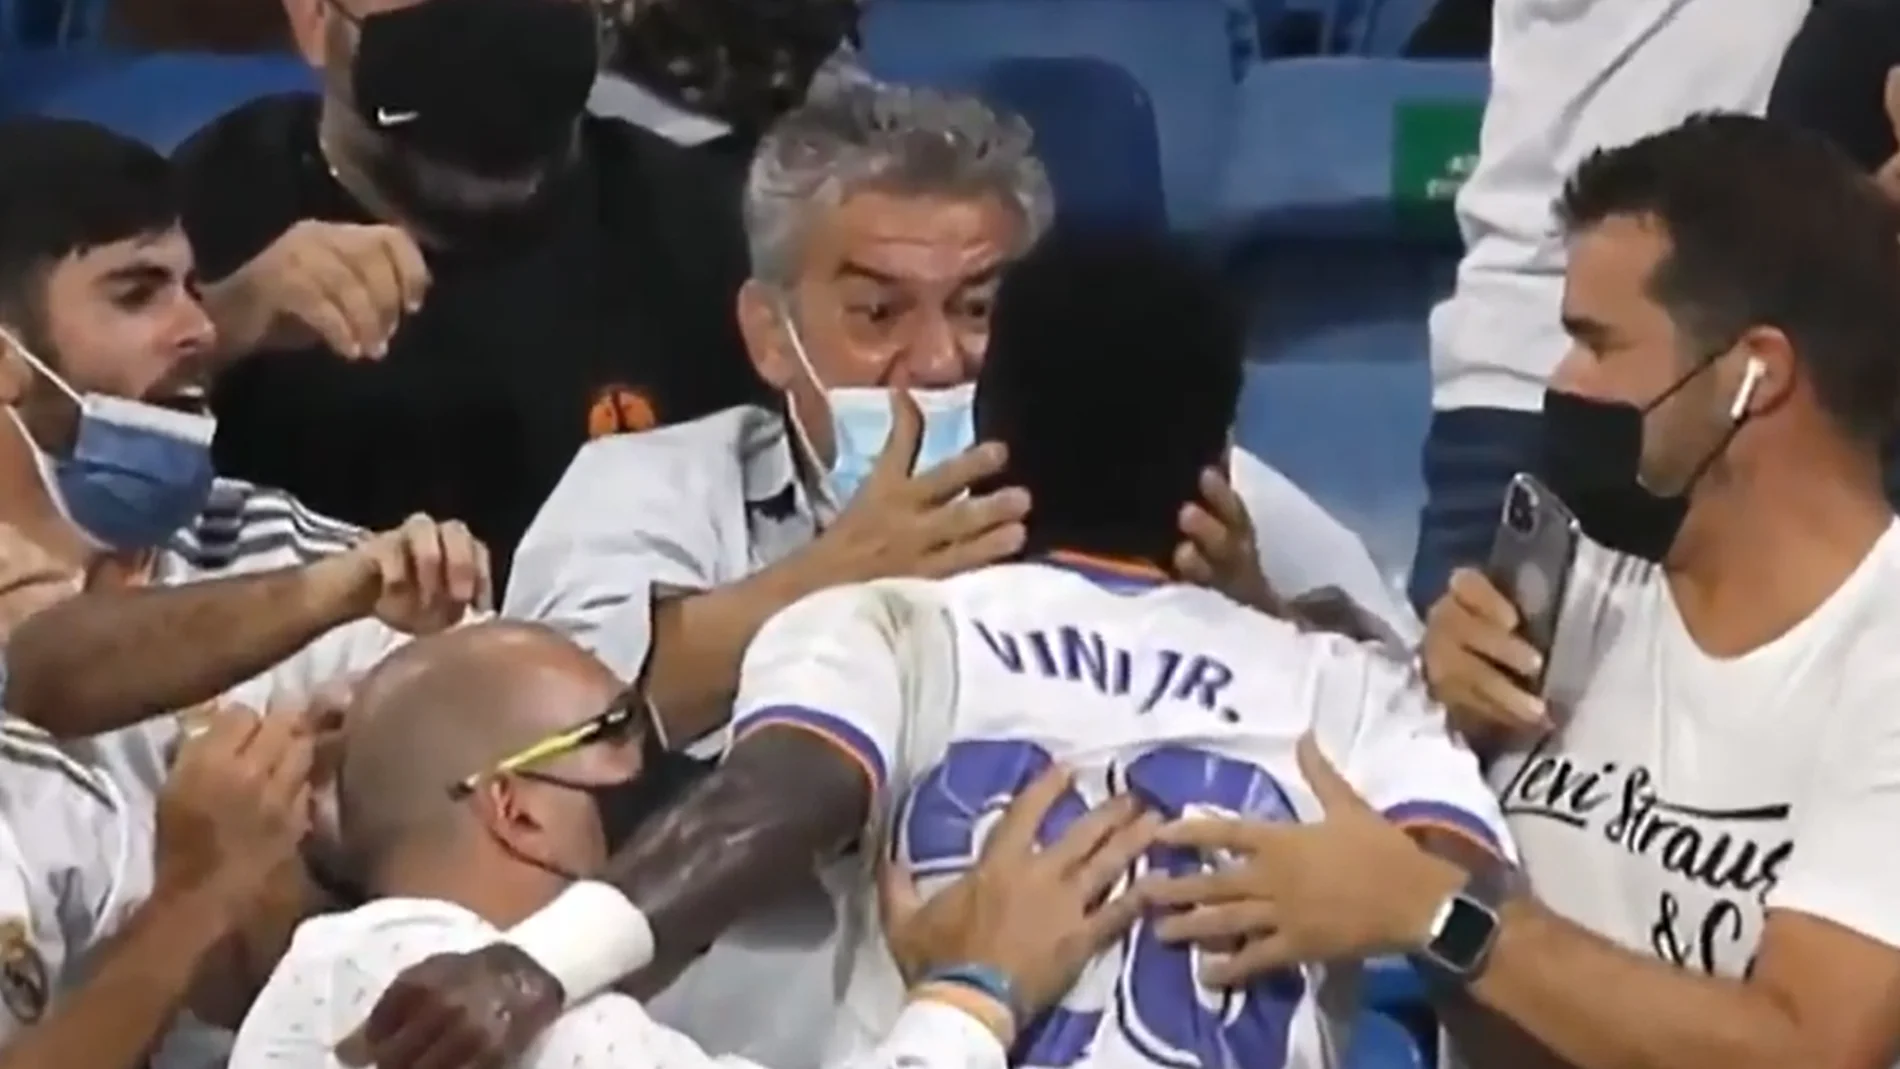 Agustín Caro, el hombre que abraza a Vinícius tras su gol en el Bernabéu: "Huele muy bien"